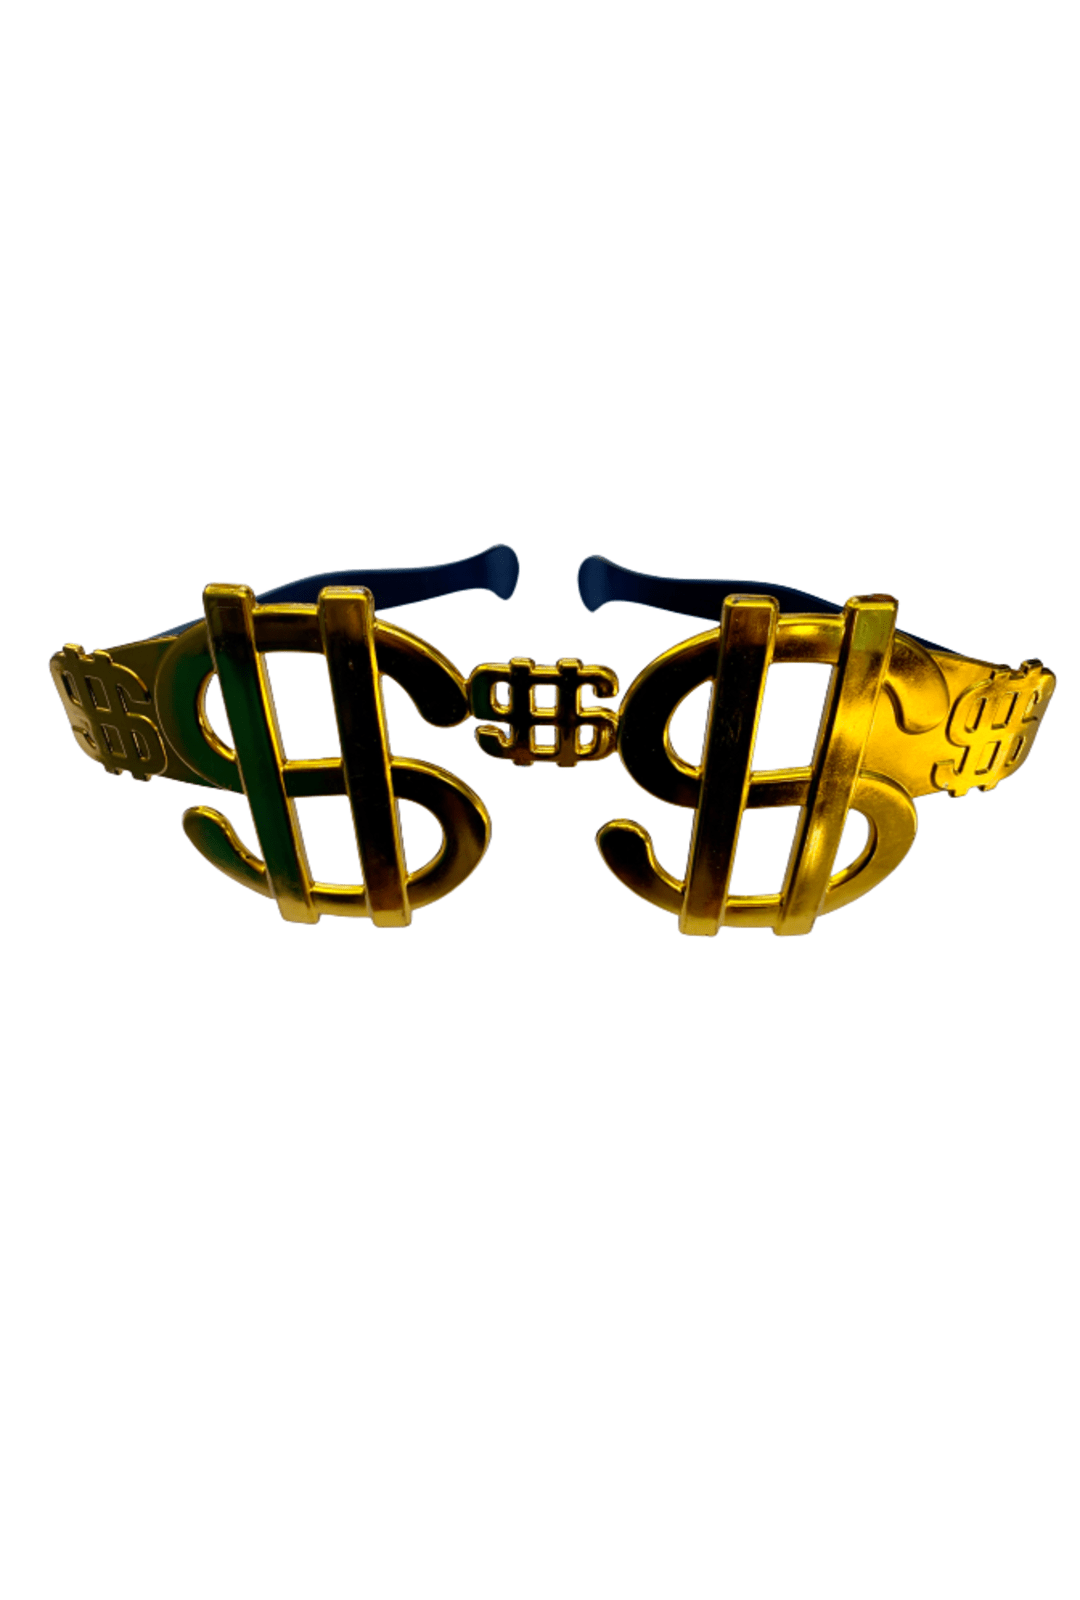 Giant Dollar Sign glasses